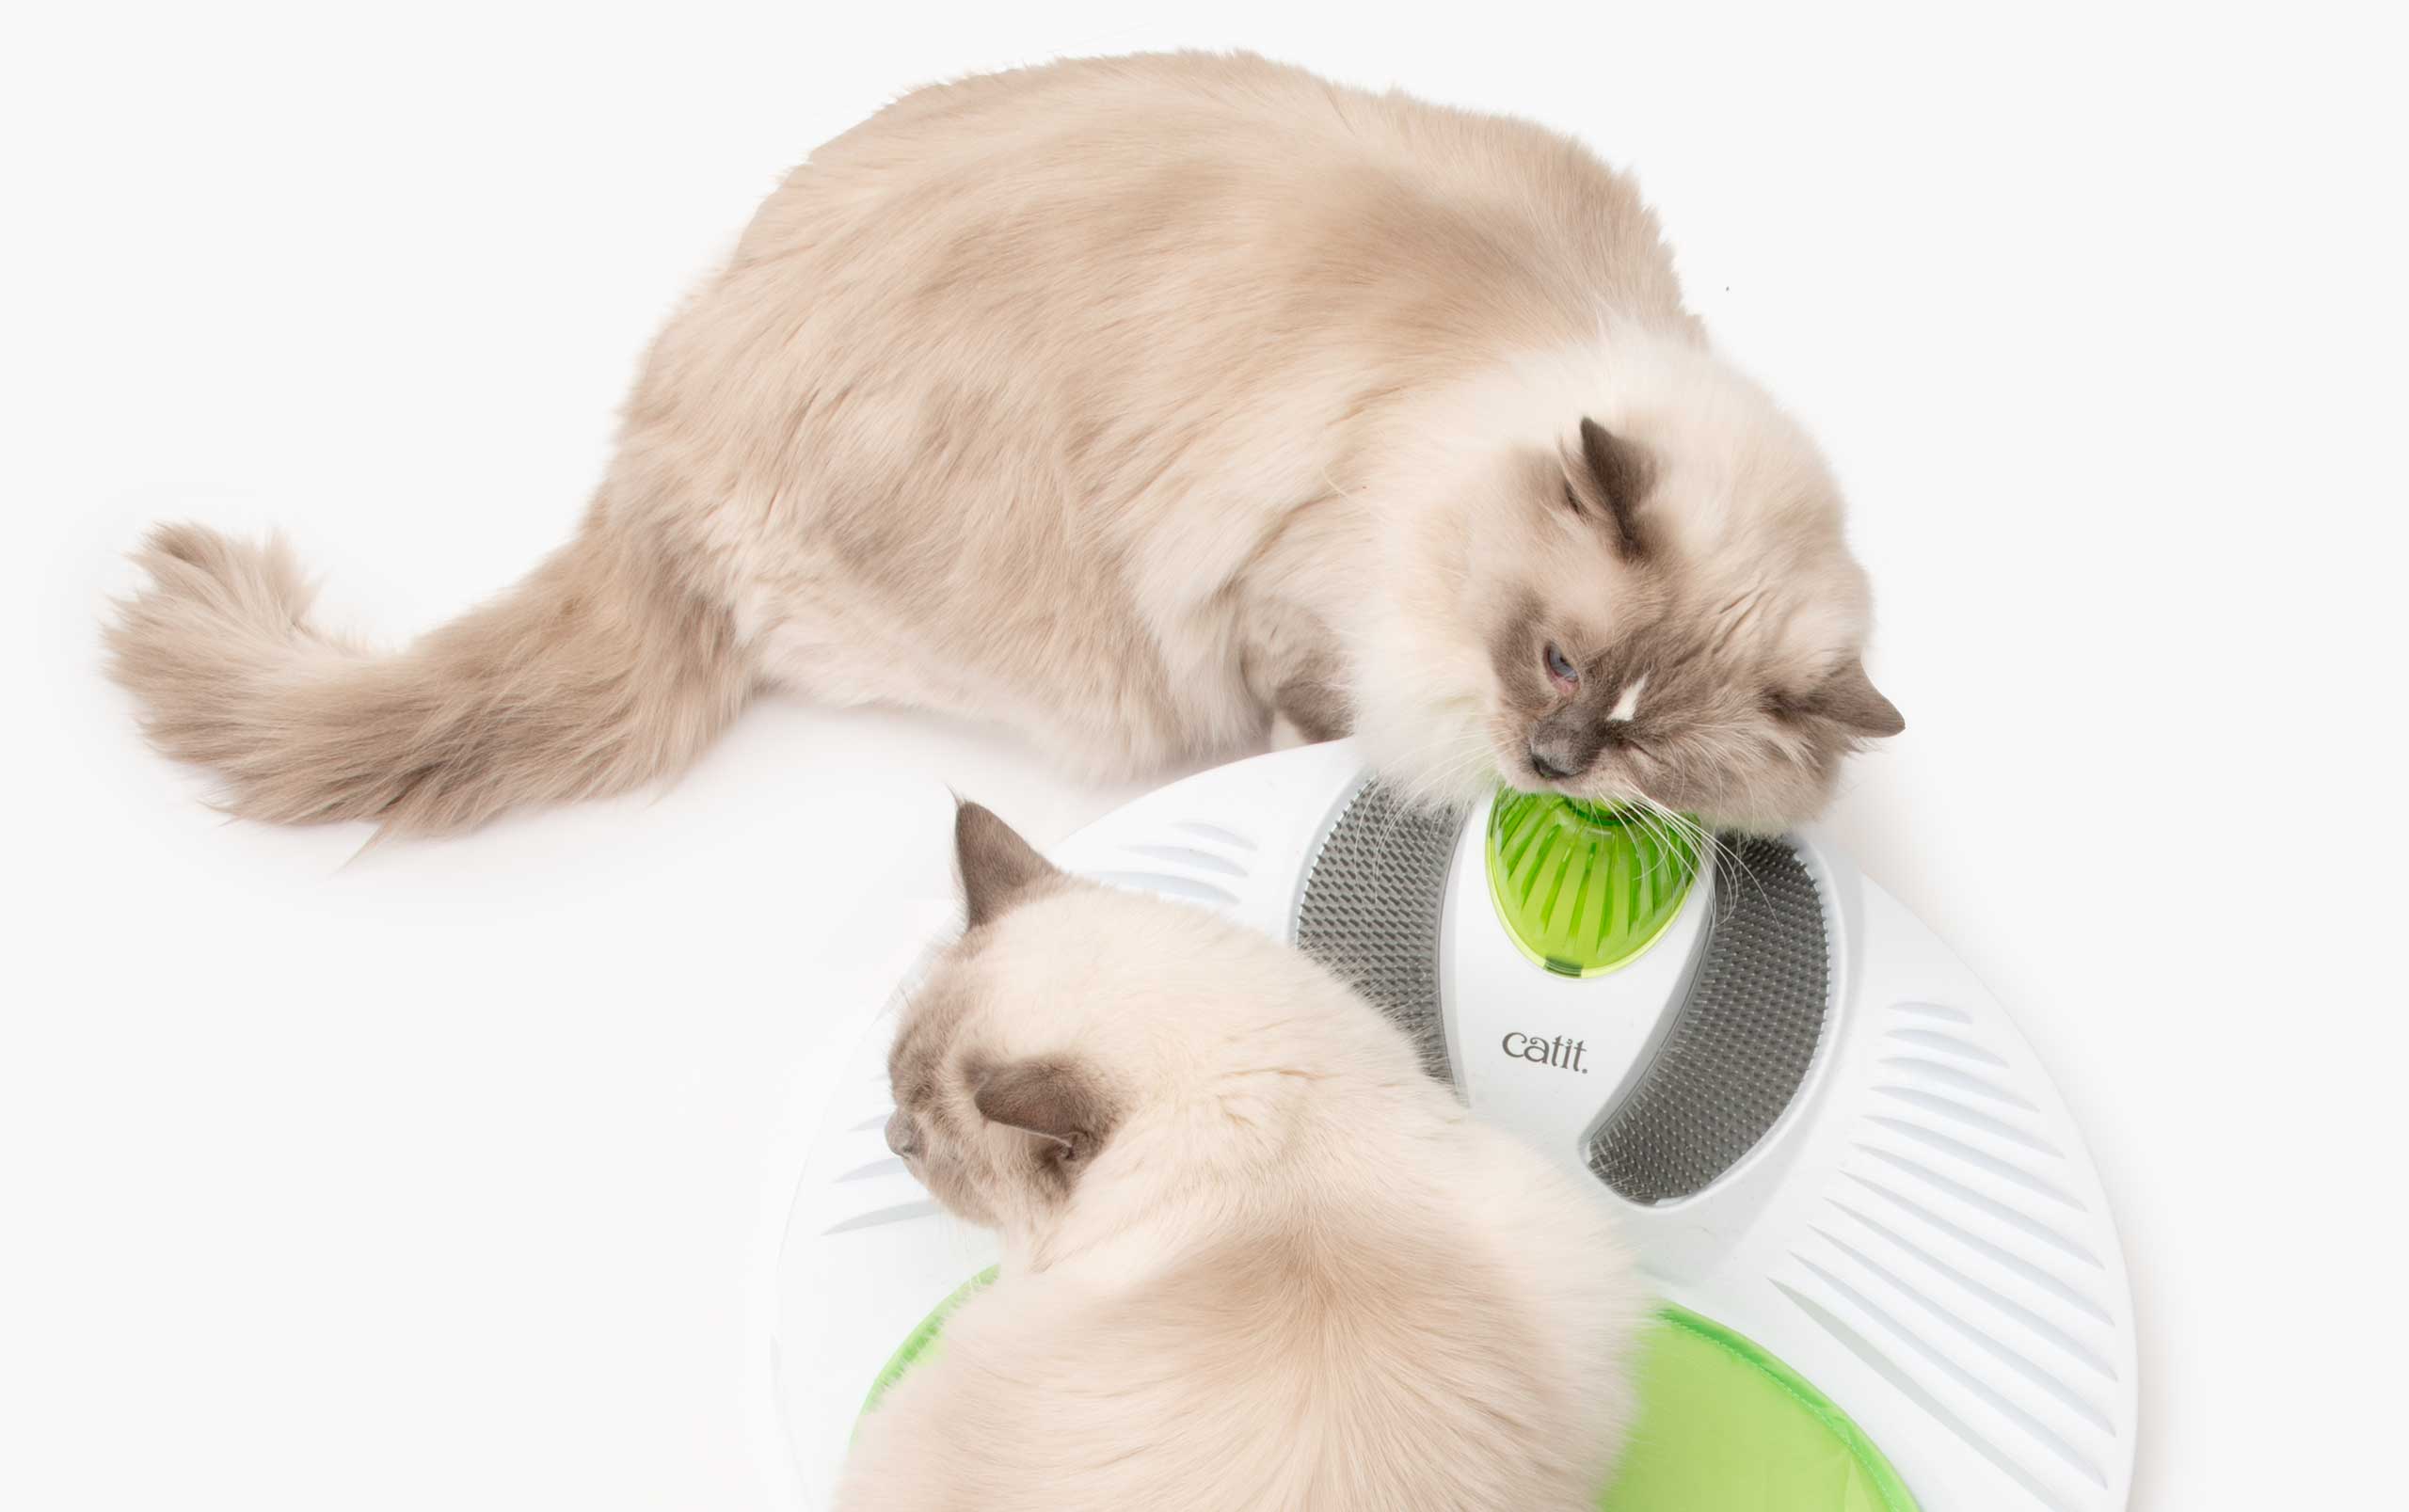 Zastosuj kocimiętkę, aby koty chętniej wchodziły w interakcje z zabawkami i drapakami